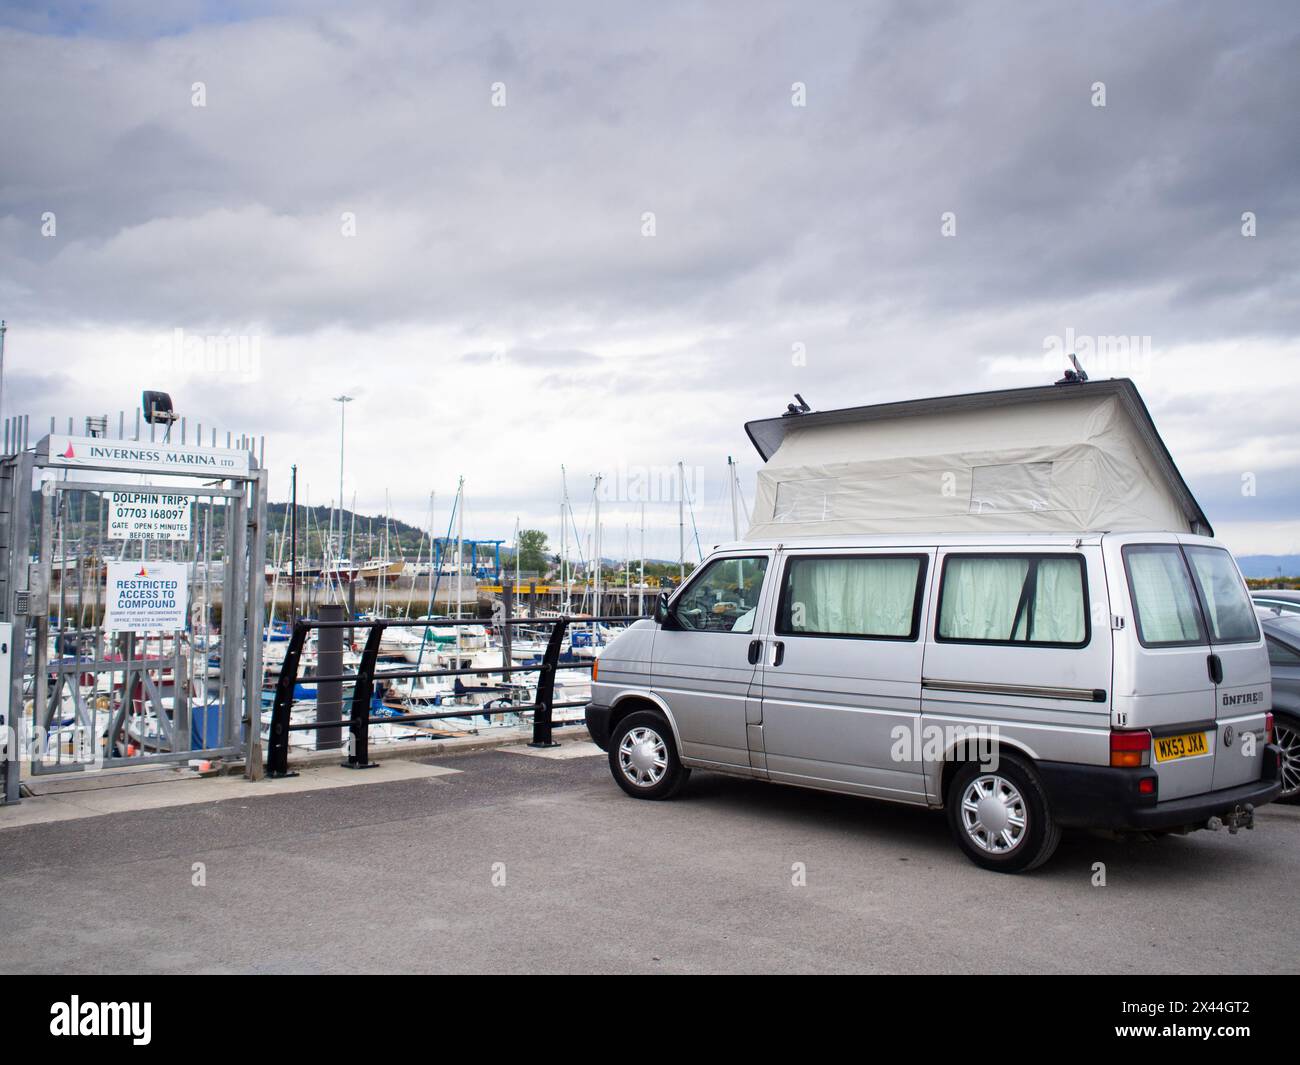 Un camping-car VW T4 2003 à Inverness Marina, Écosse, Royaume-Uni. Banque D'Images